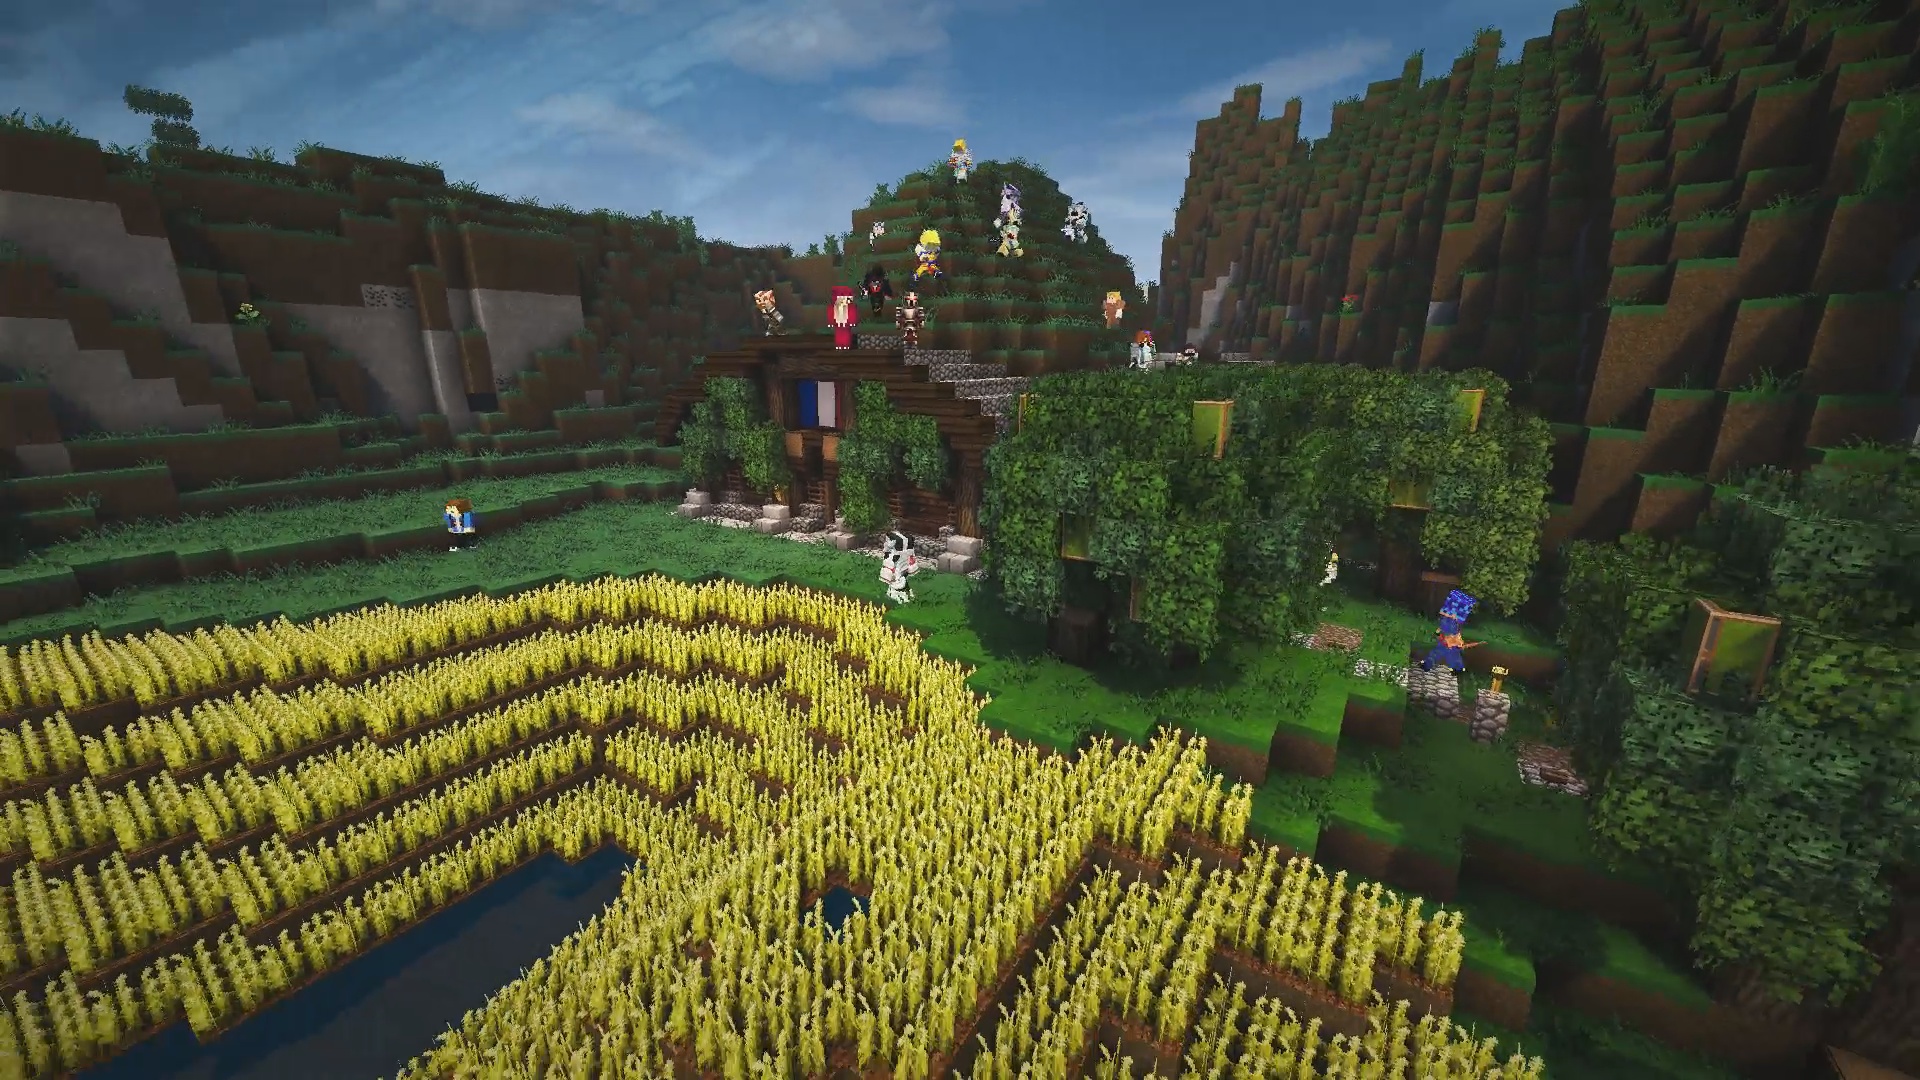 Bienvenue dans le nouveau village Hobbit de MrAntho !